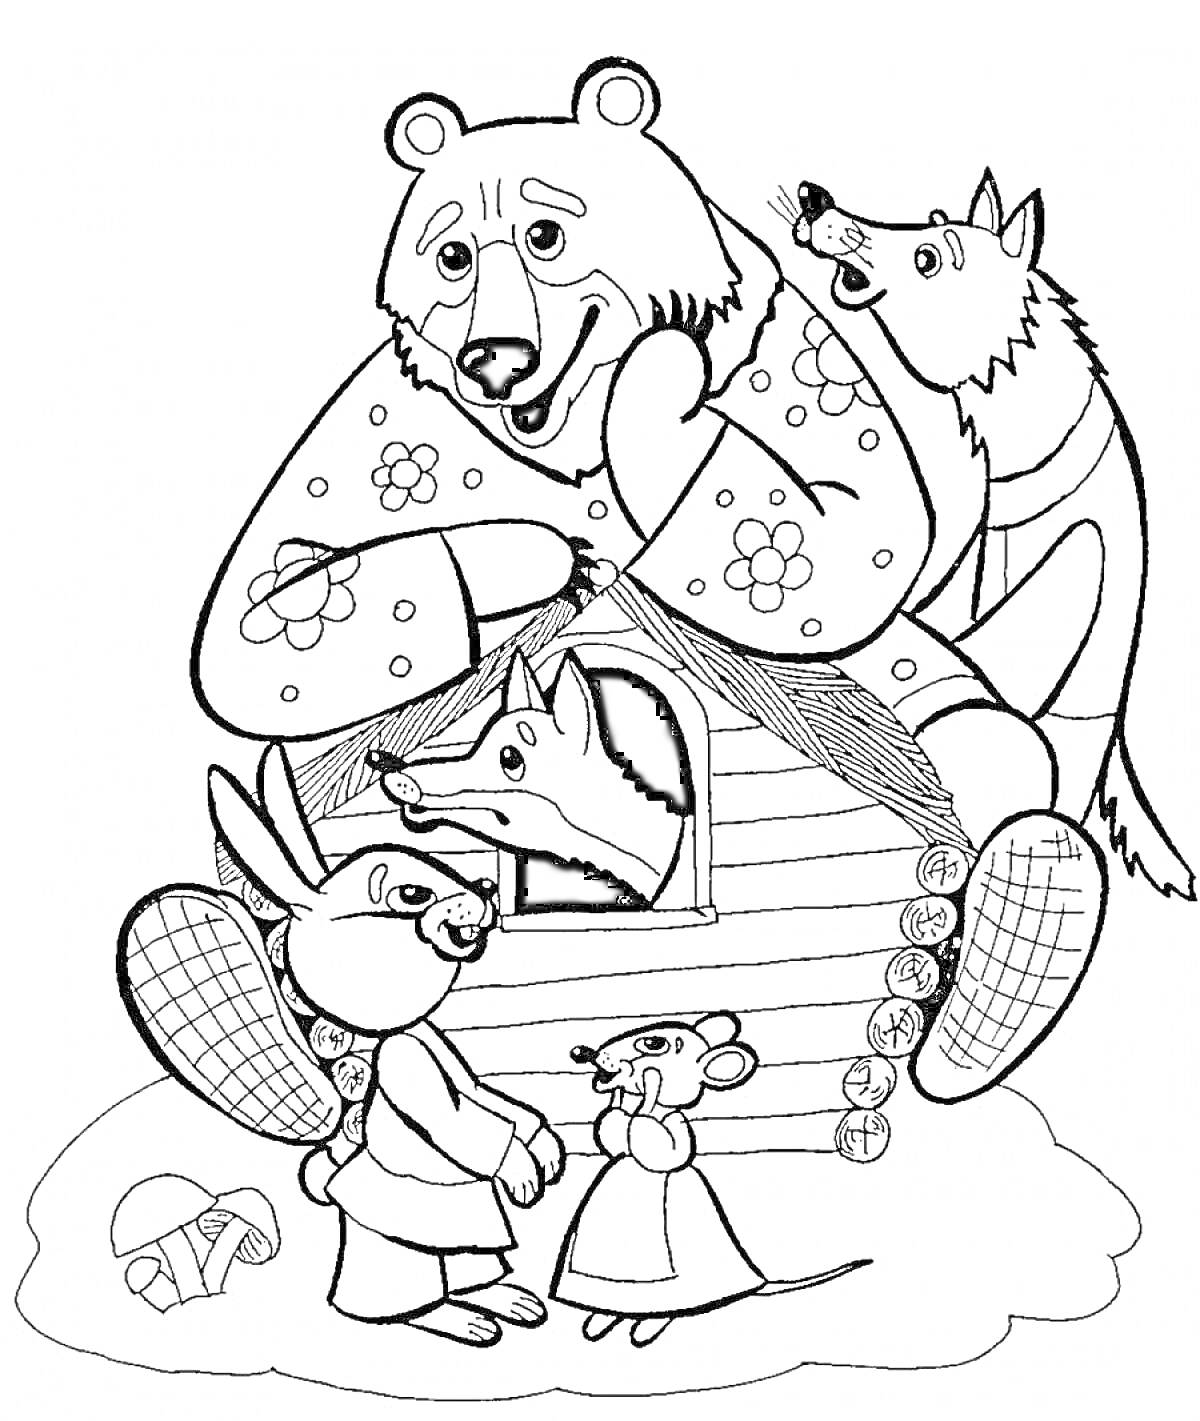 Раскраска Сказочные герои возле теремка, медведь наверху, волк сбоку, лиса в доме, заяц и мышка у входа, гриб внизу